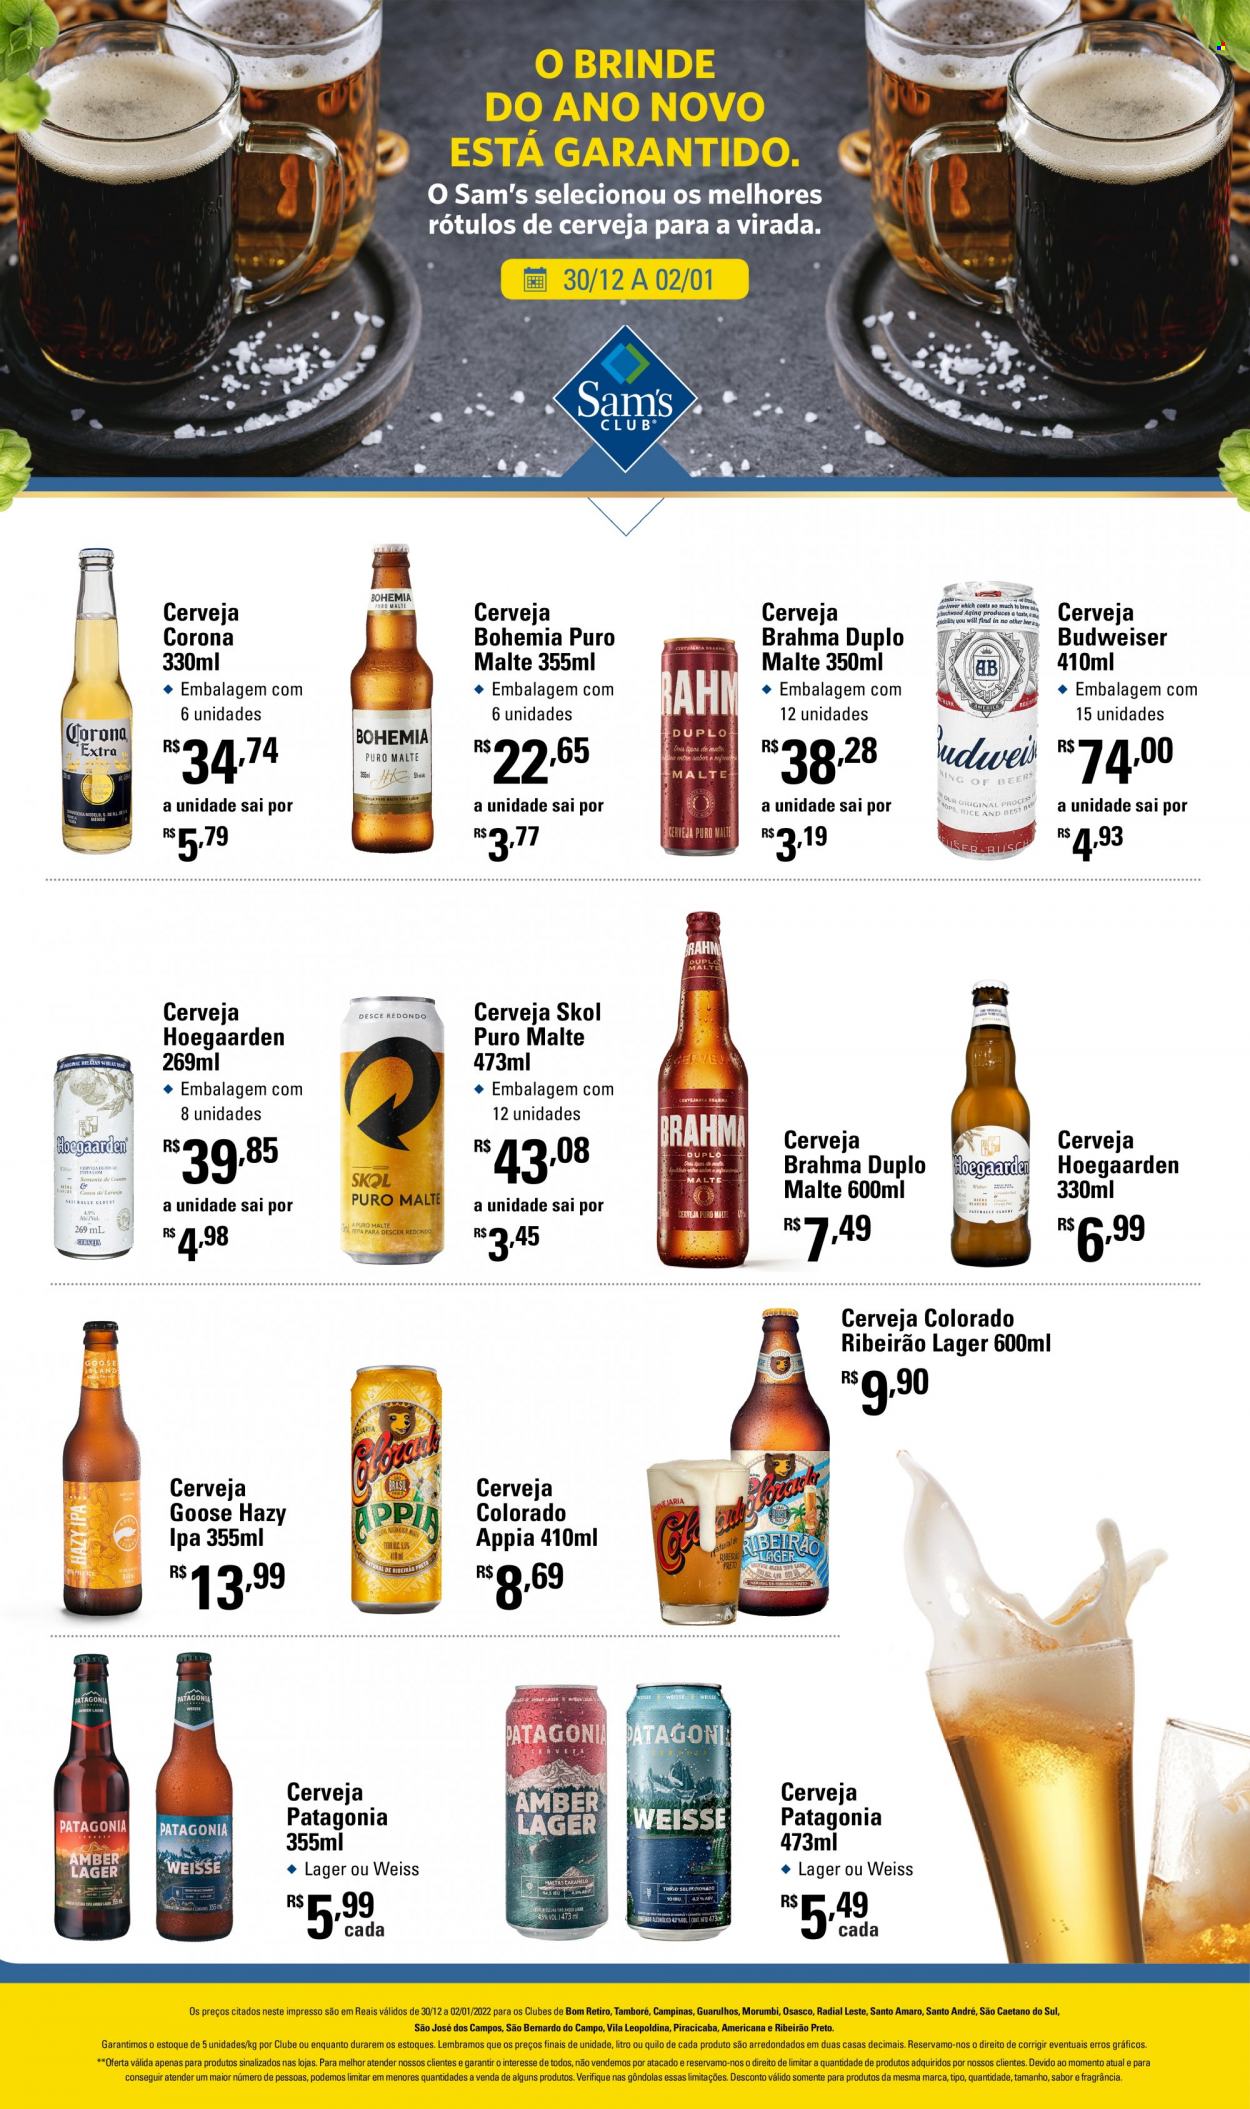 thumbnail - Folheto Sam's Club - 30/12/2021 - 02/01/2022 - Produtos em promoção - Corona, cerveja Colorado, Hoegaarden, Patagonia, Skol, Budweiser, Brahma, cerveja, Puro Malte. Página 1.